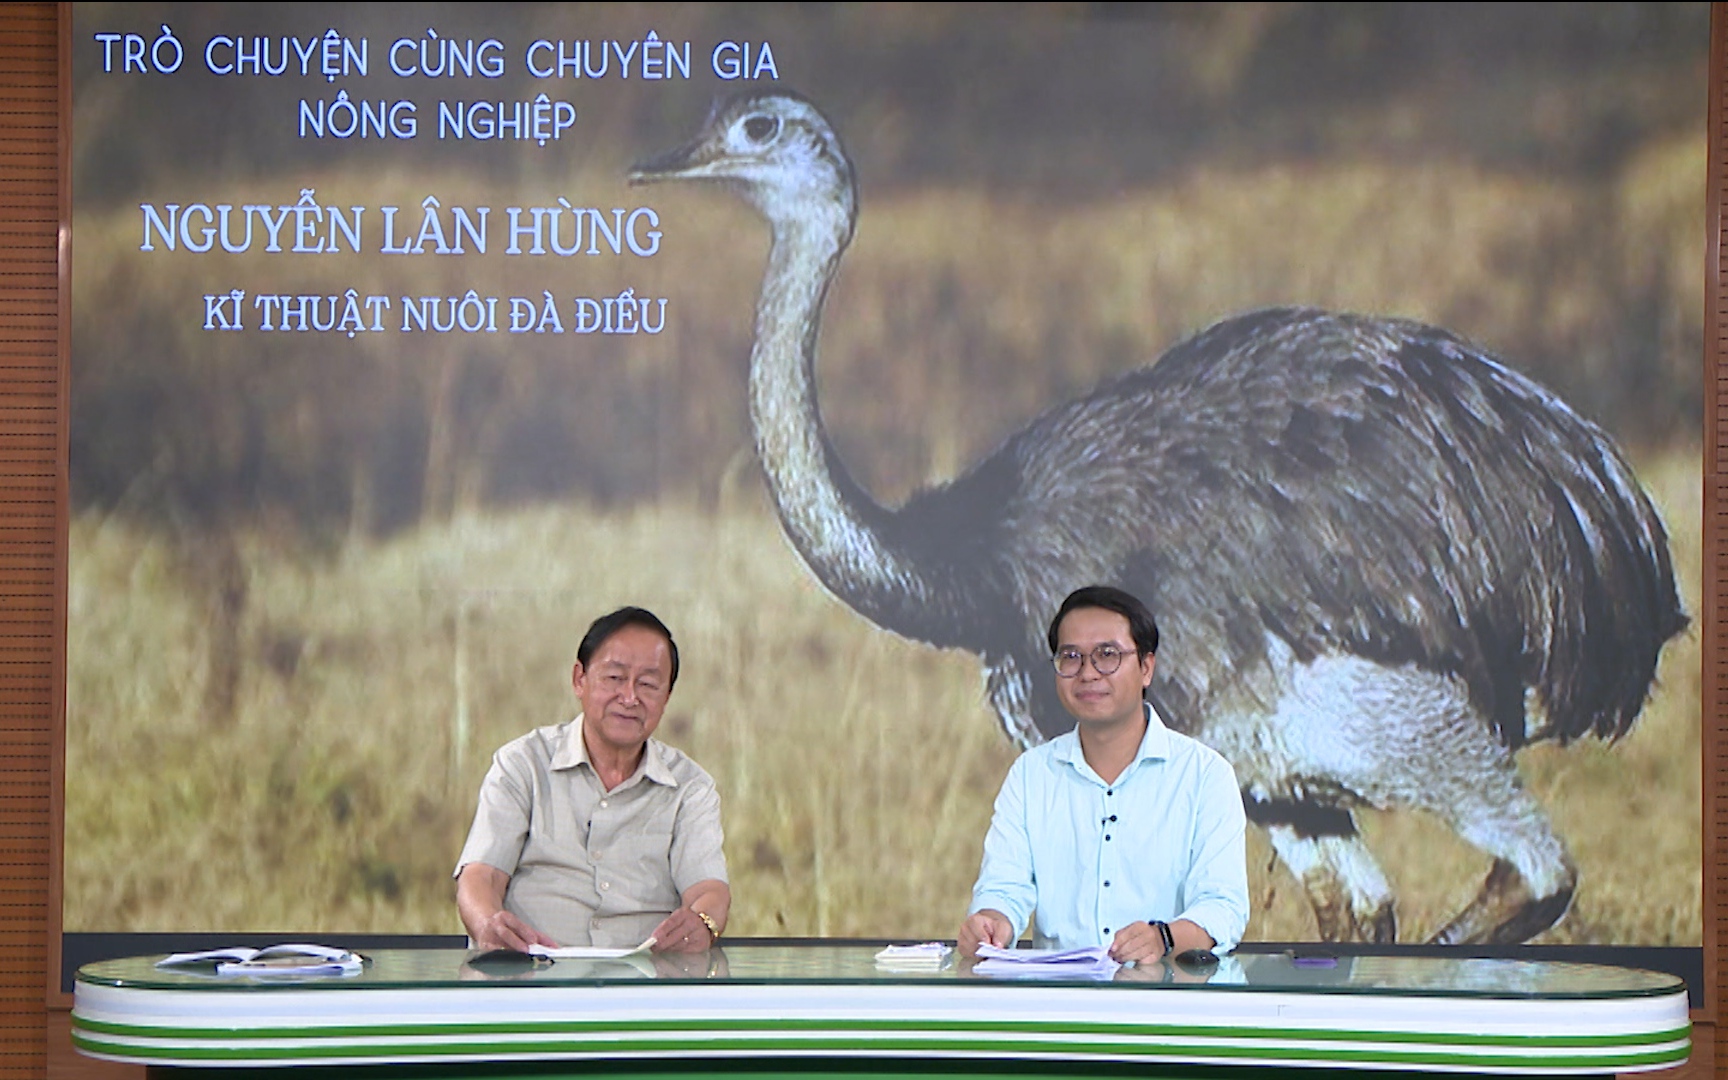 GÓC CHUYÊN GIA: Cùng chuyên gia Nguyễn Lân Hùng tìm hiểu về kỹ thuật nuôi đà điểu